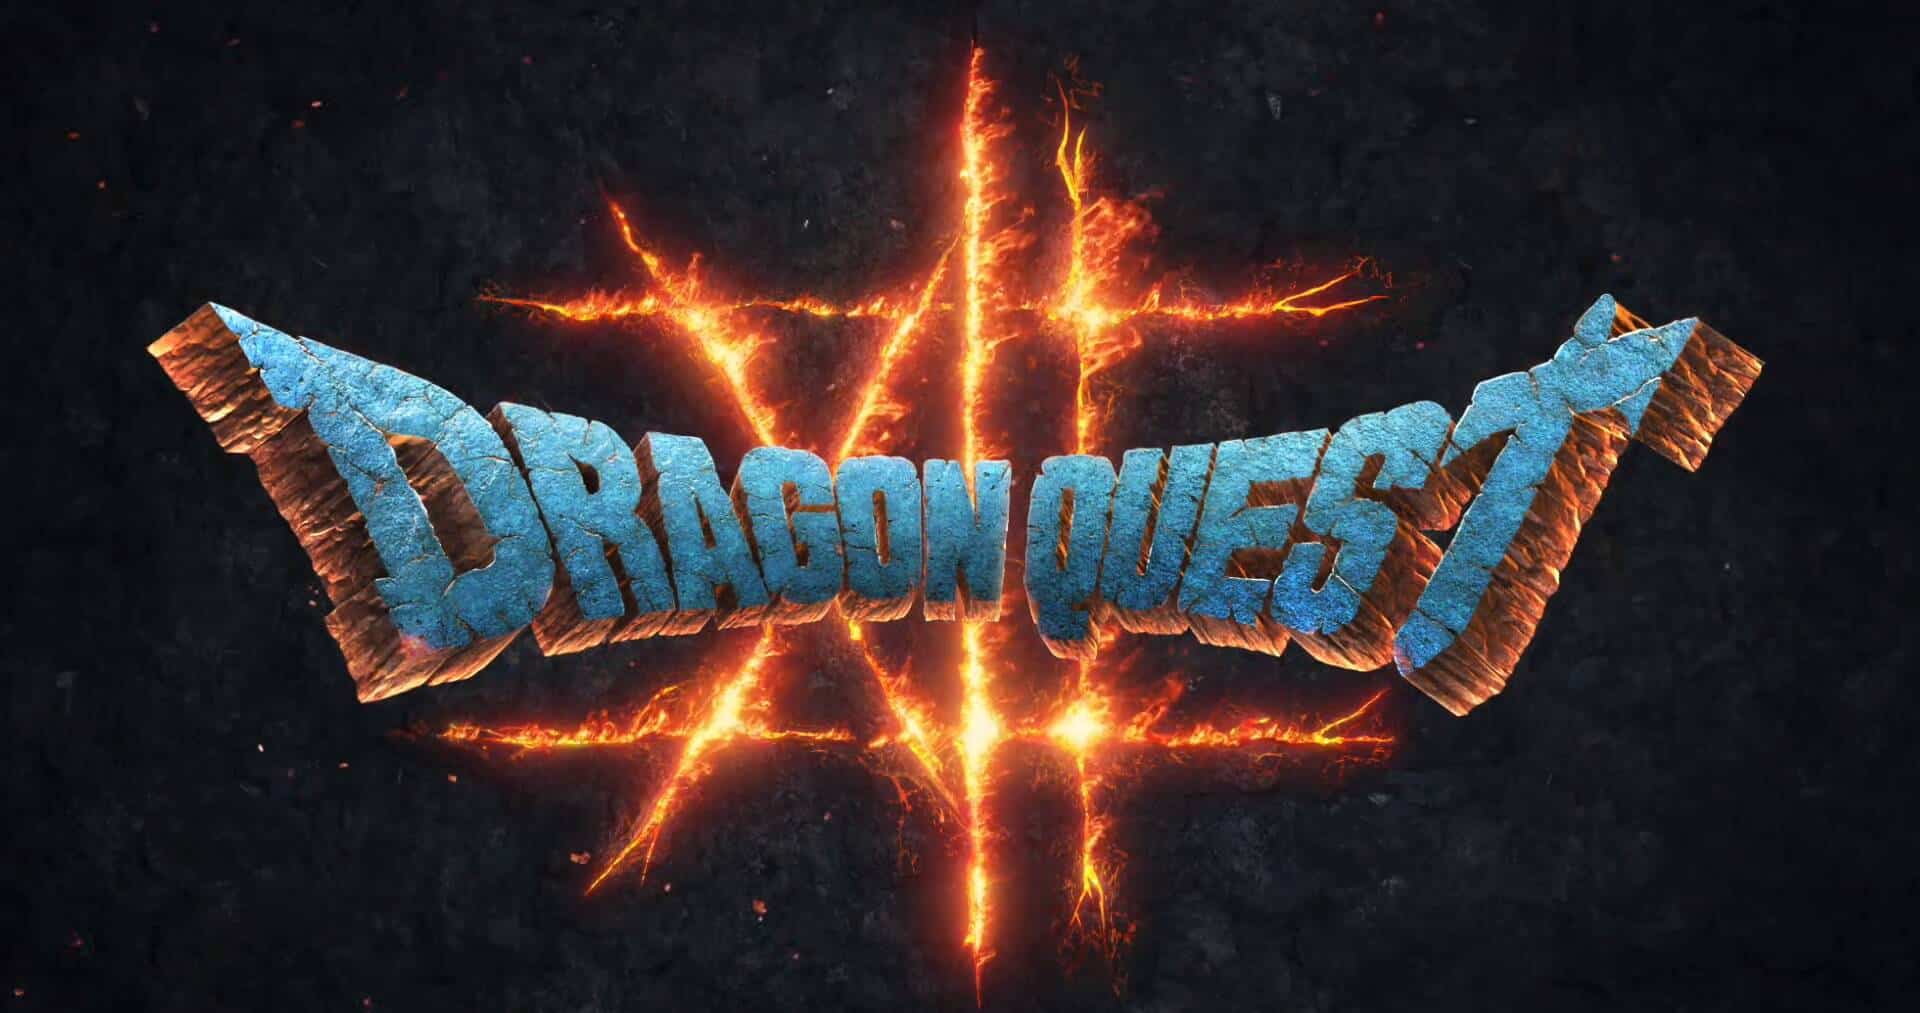 Dragon Quest 12: The Flames of Fate si presenta con un teaser trailer